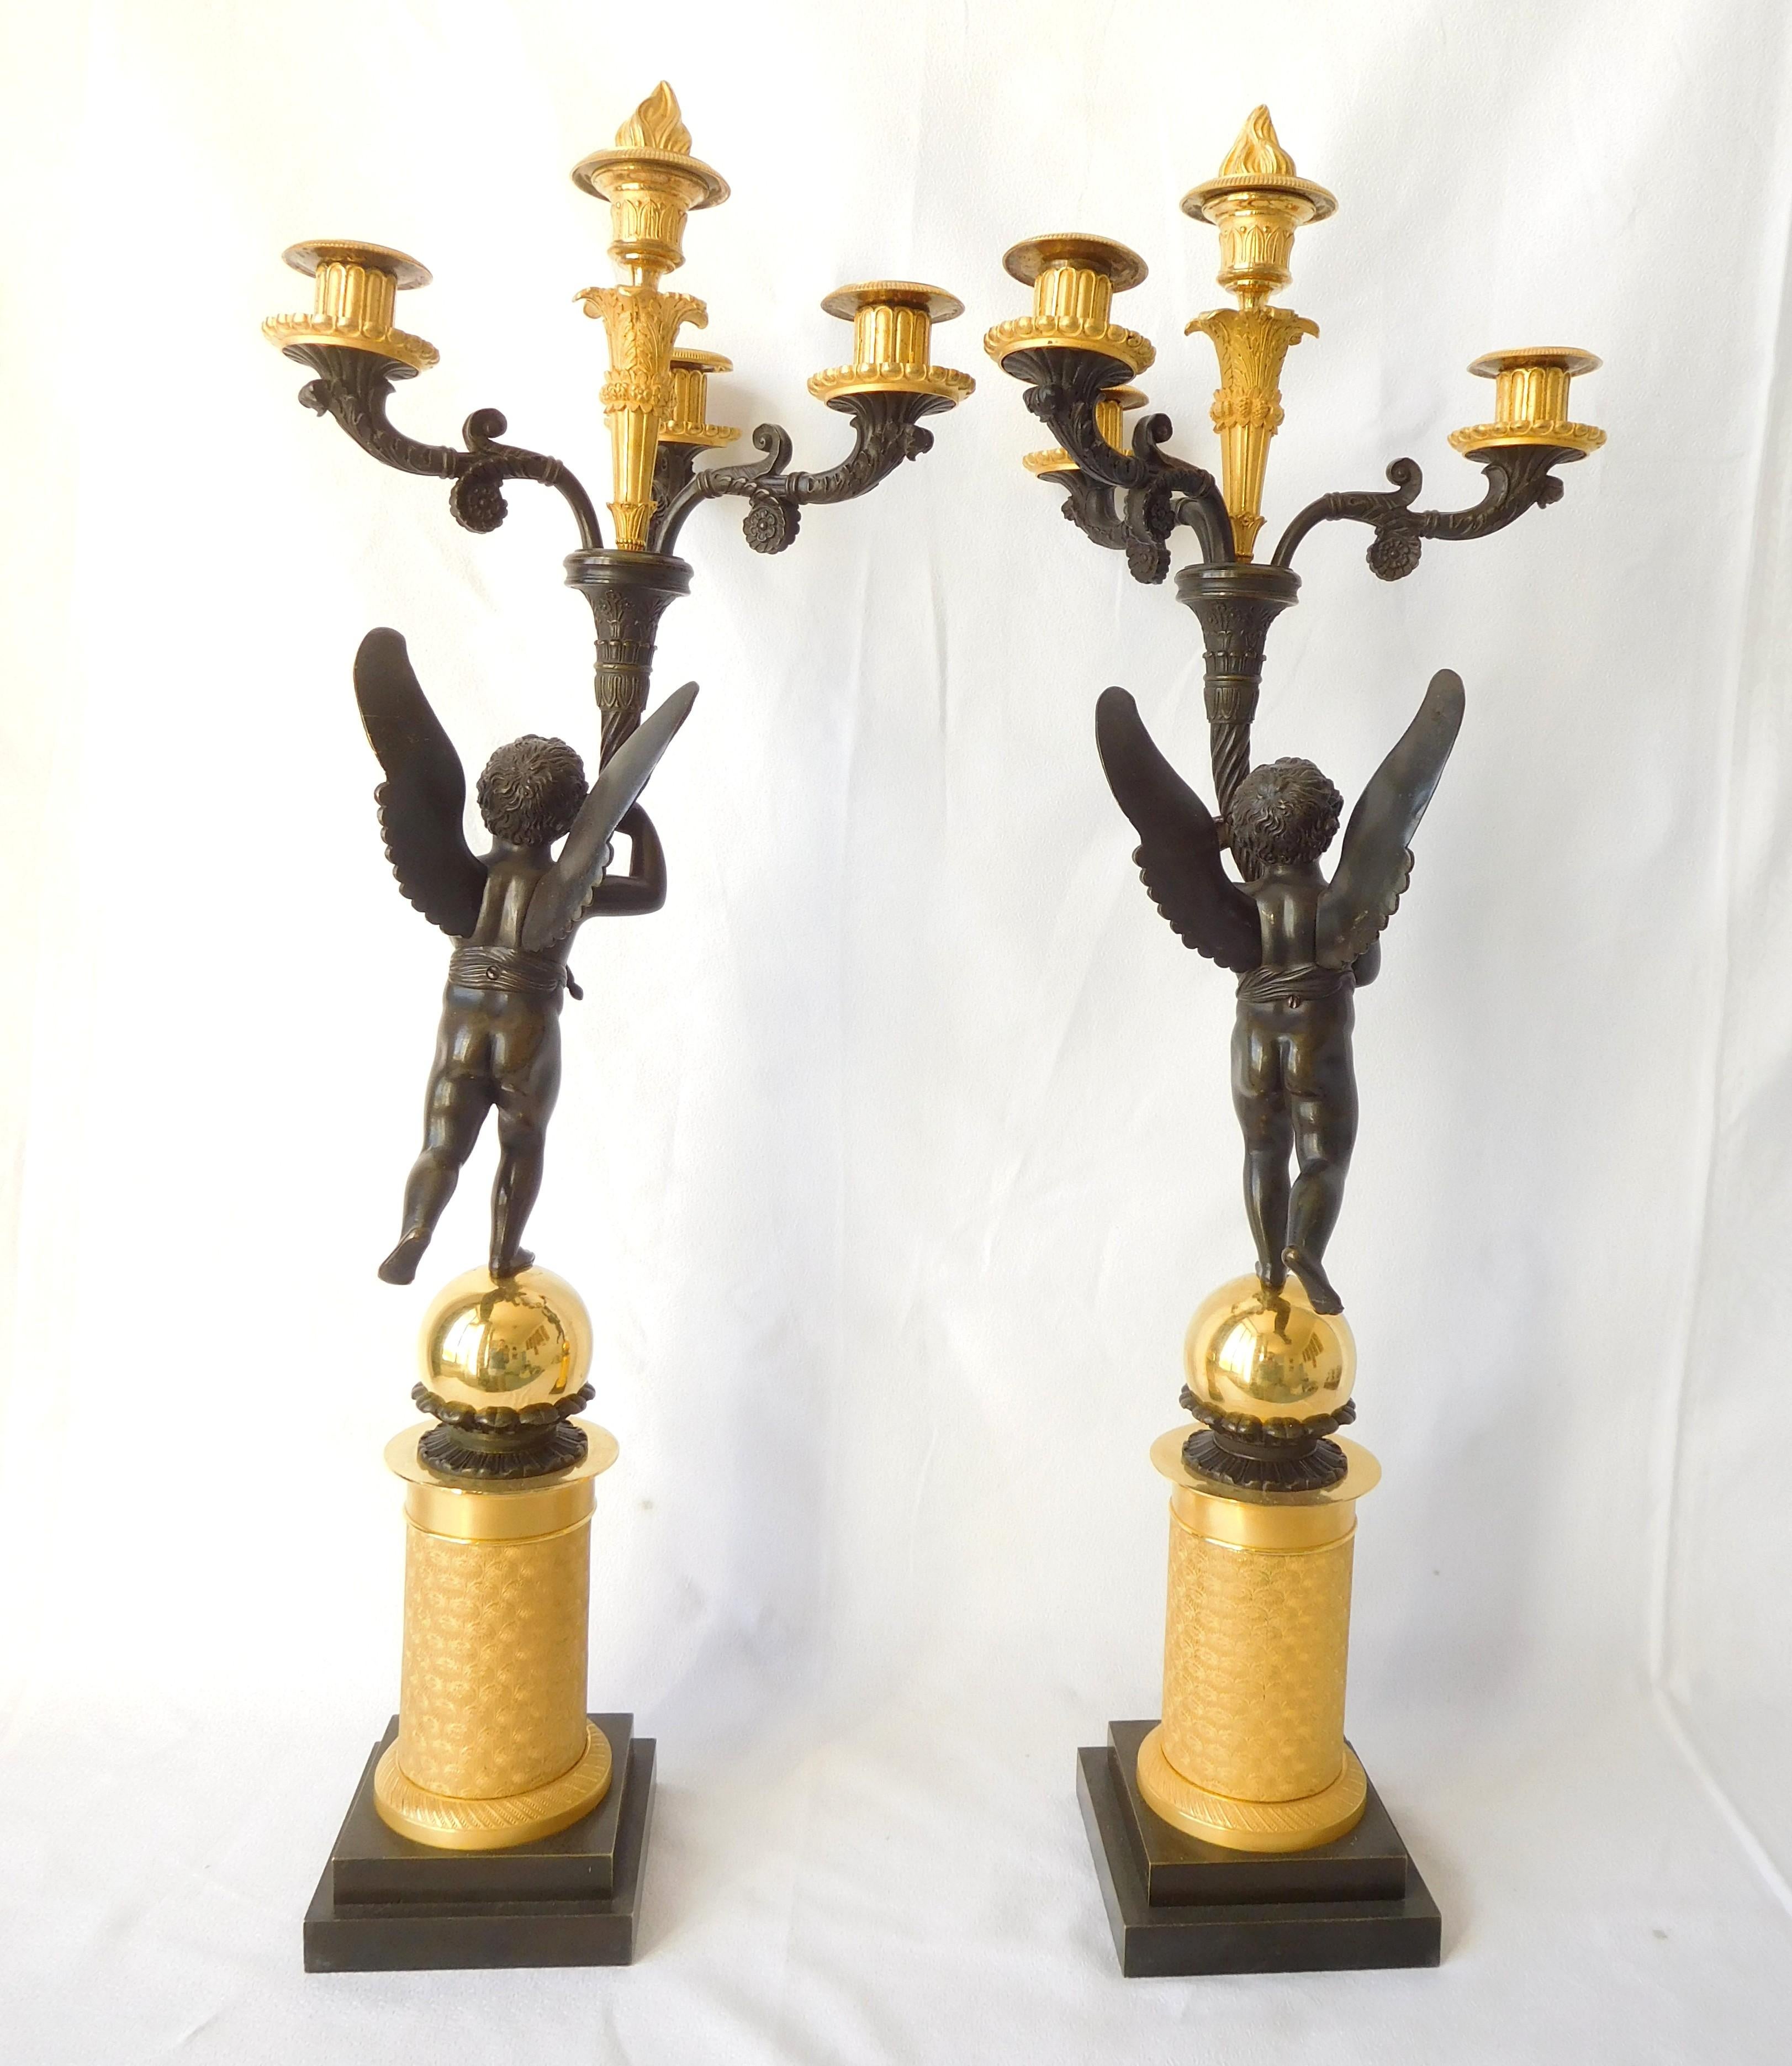 Paire de hauts candélabres en bronze doré (mercure) et bronze patiné, production de l'Empire français, début du XIXe siècle vers 1815 - 1820.
Grand modèle à 4 lumières tenu par des putti ailés reposant sur une base en forme de colonne en bronze doré